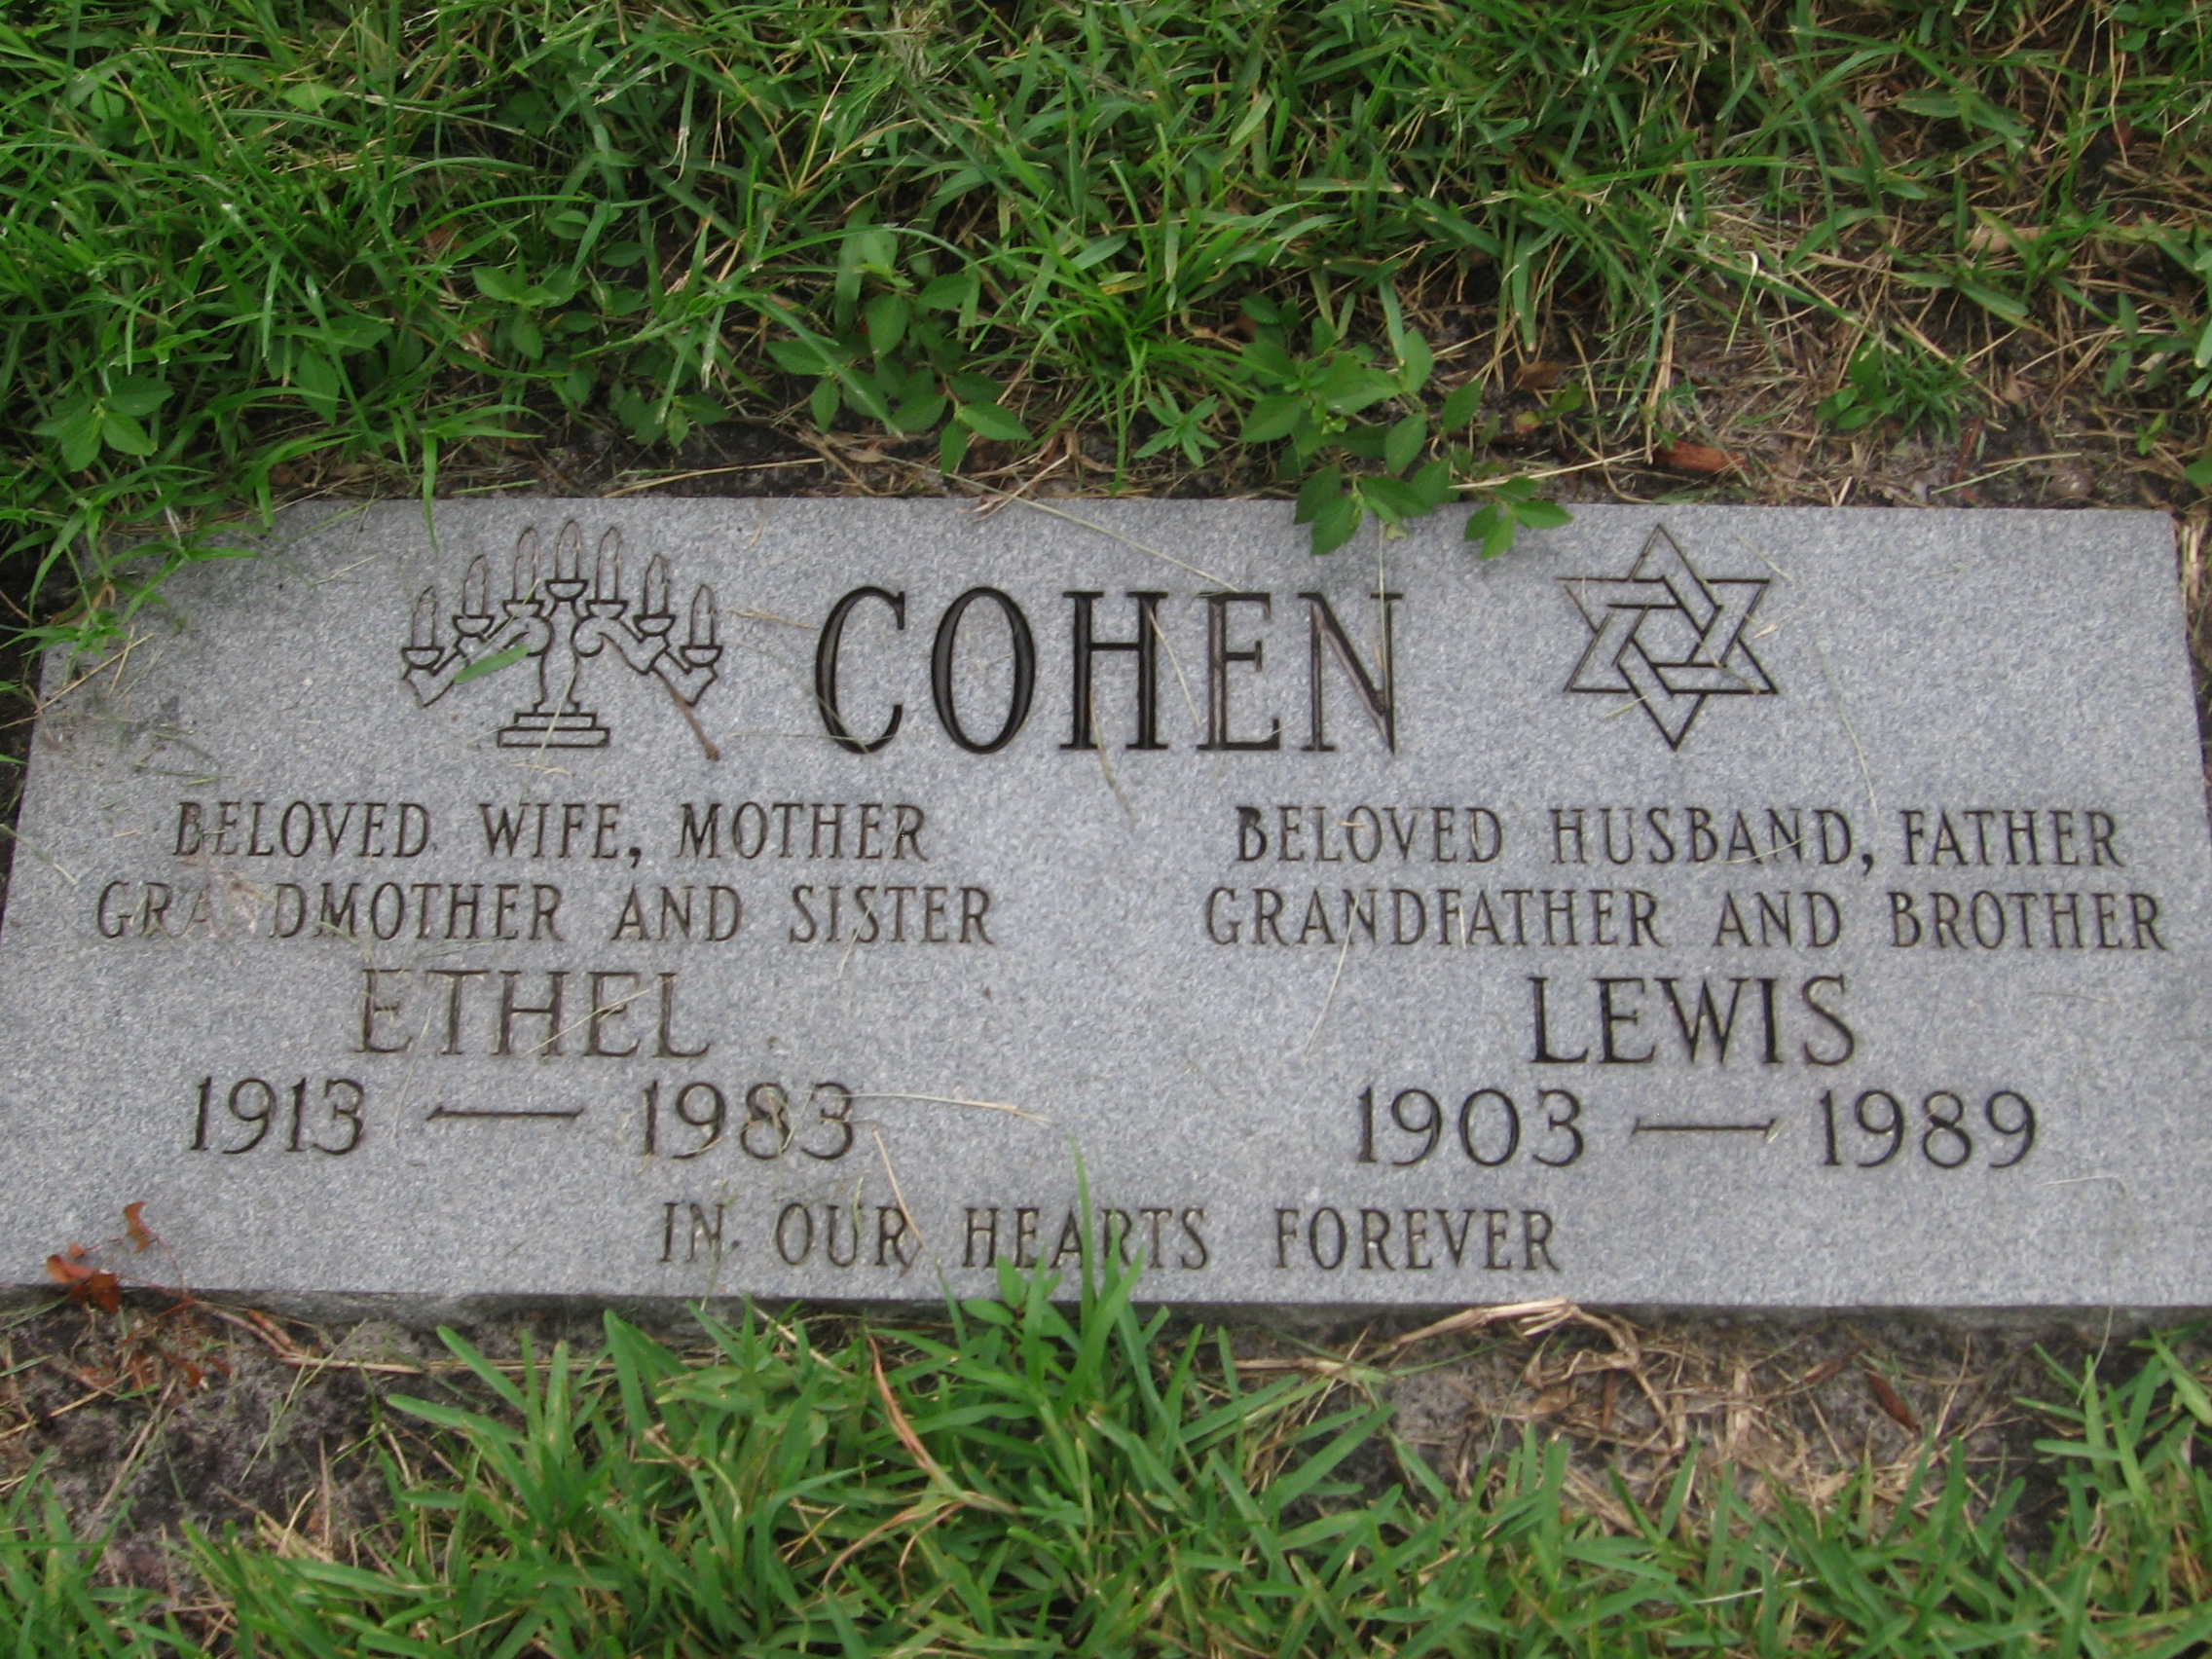 Lewis Cohen